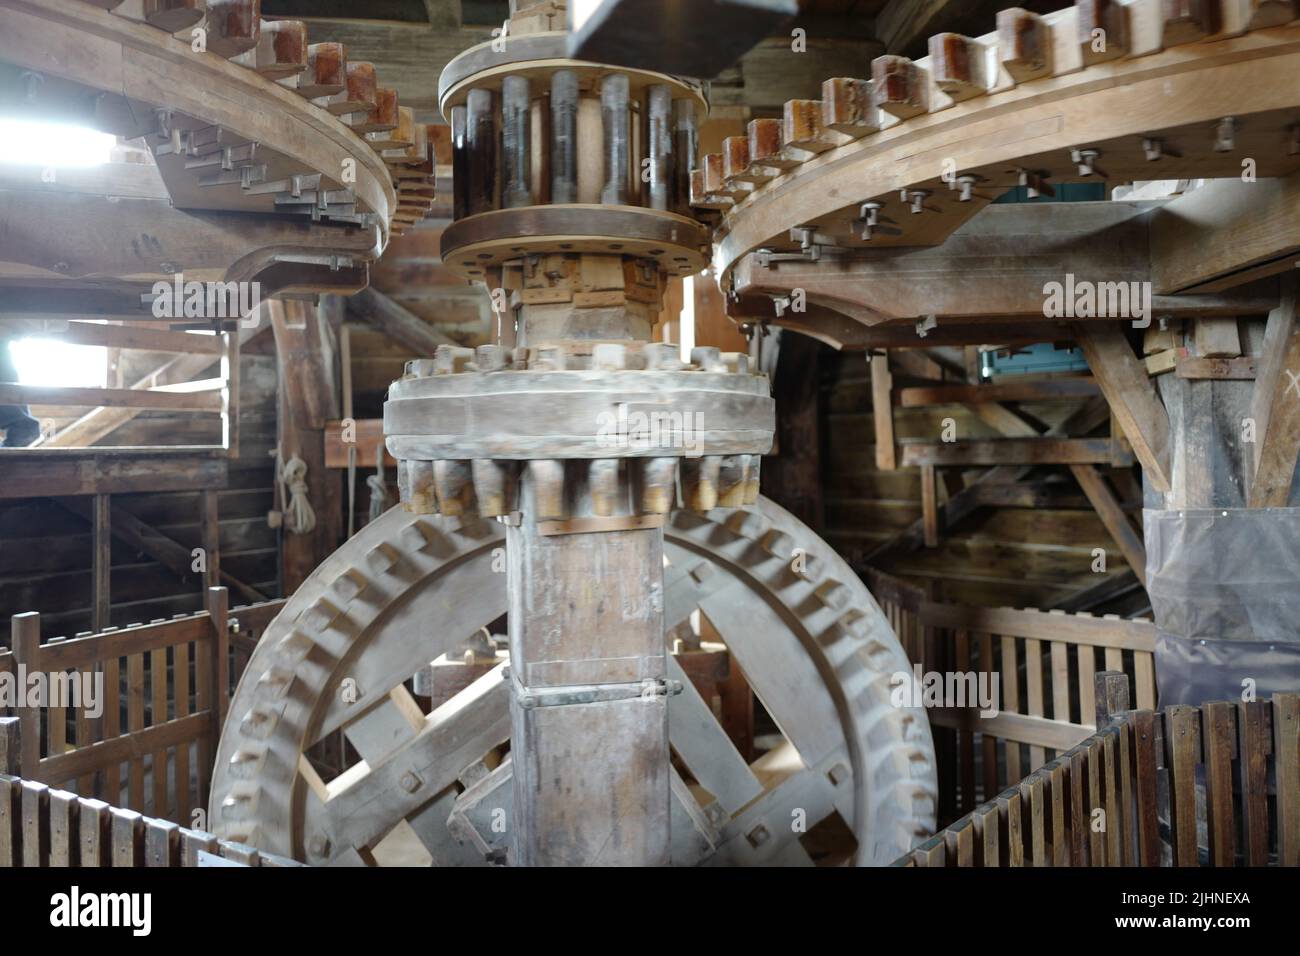 Mechanism inside a windmills at Zaanse Schans in the Netherlands Stock Photo